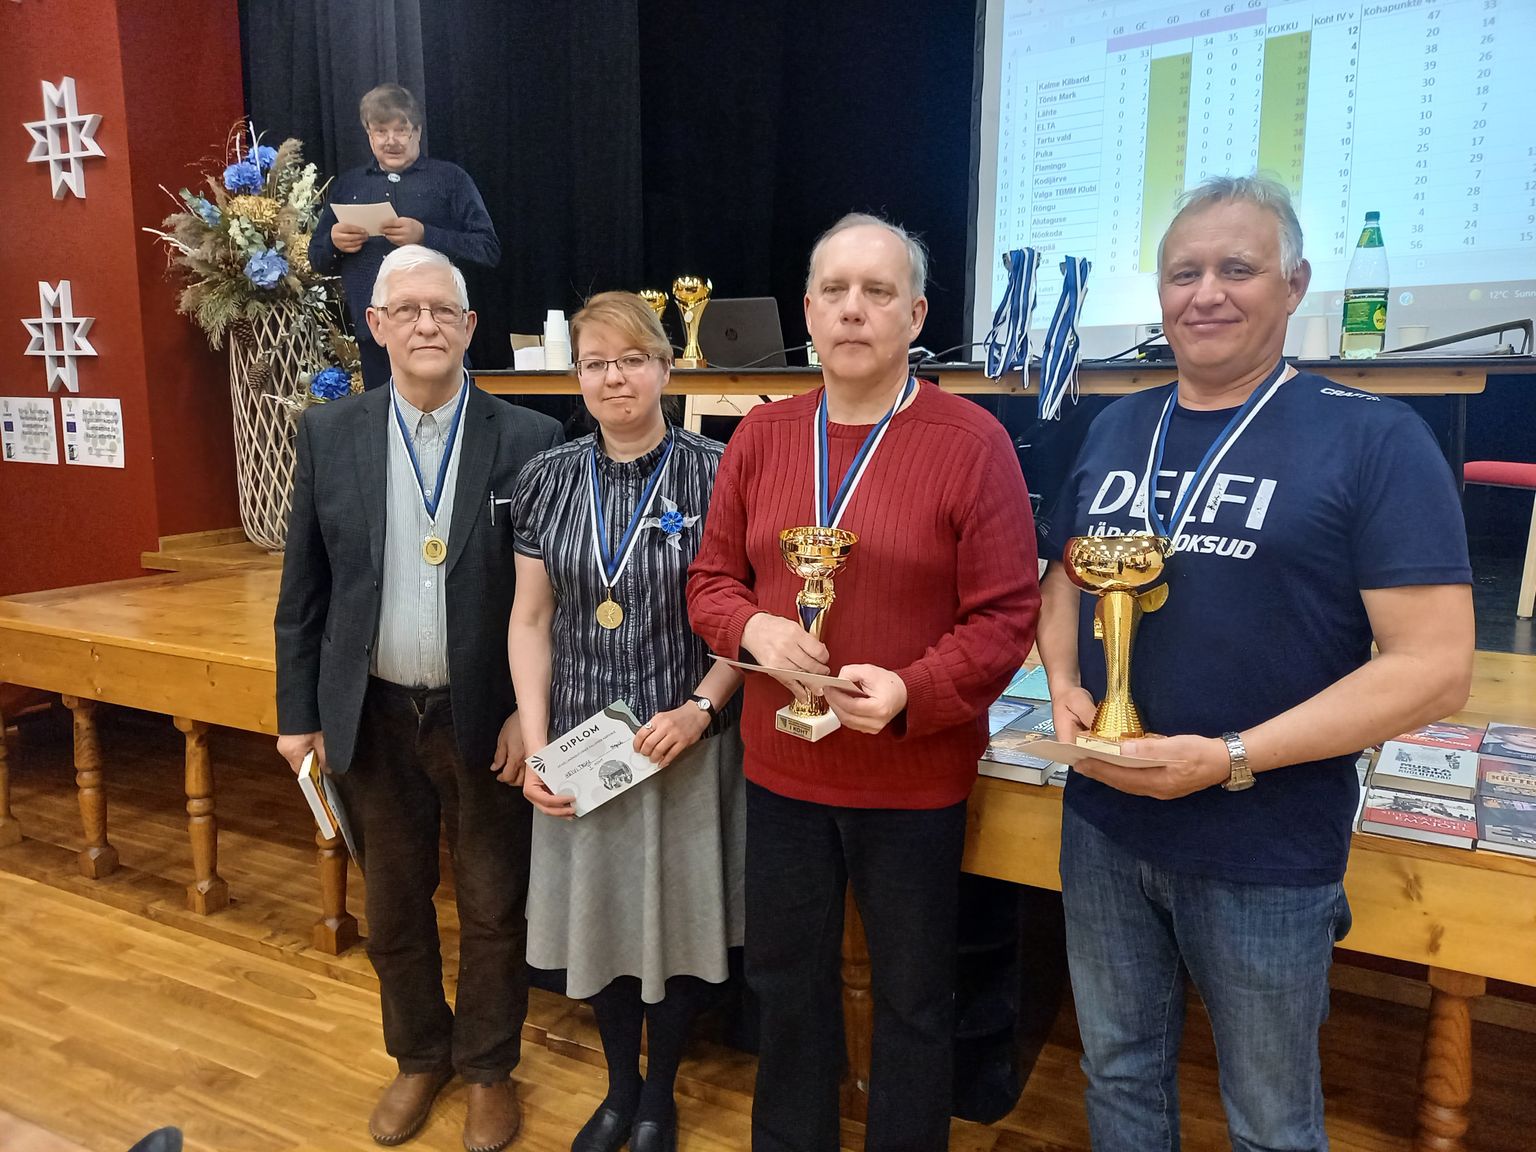 Rõngus selgusid Palupera karika võitjad ja Valgamaa meistrid mälumängus. Mõlemas arvestuses võitis Otepää tiim koosseisus Mairold Kõrvel (vasakult), Heivi Truu, Kaido Mägi ja Urmas Kuldmaa.